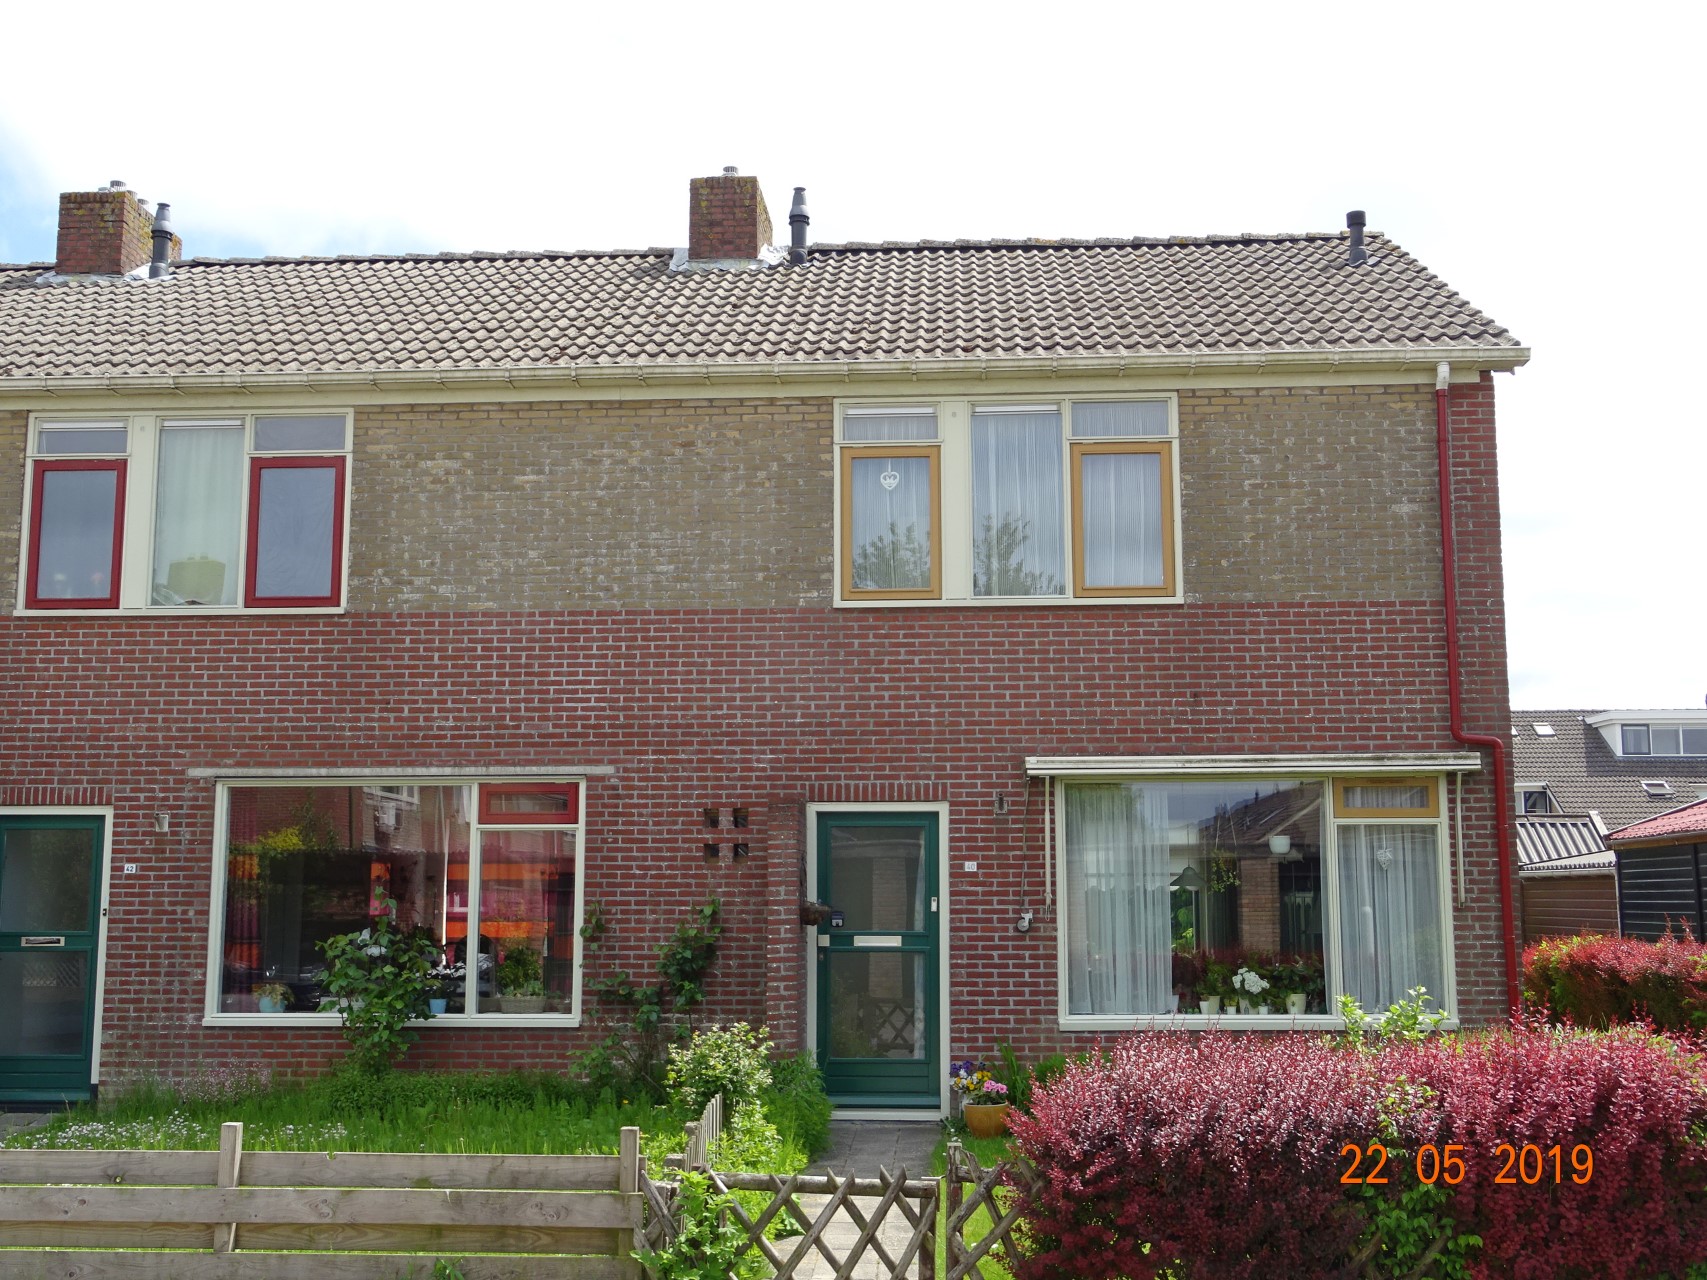 Julianastraat 40, 9073 GZ Marrum, Nederland